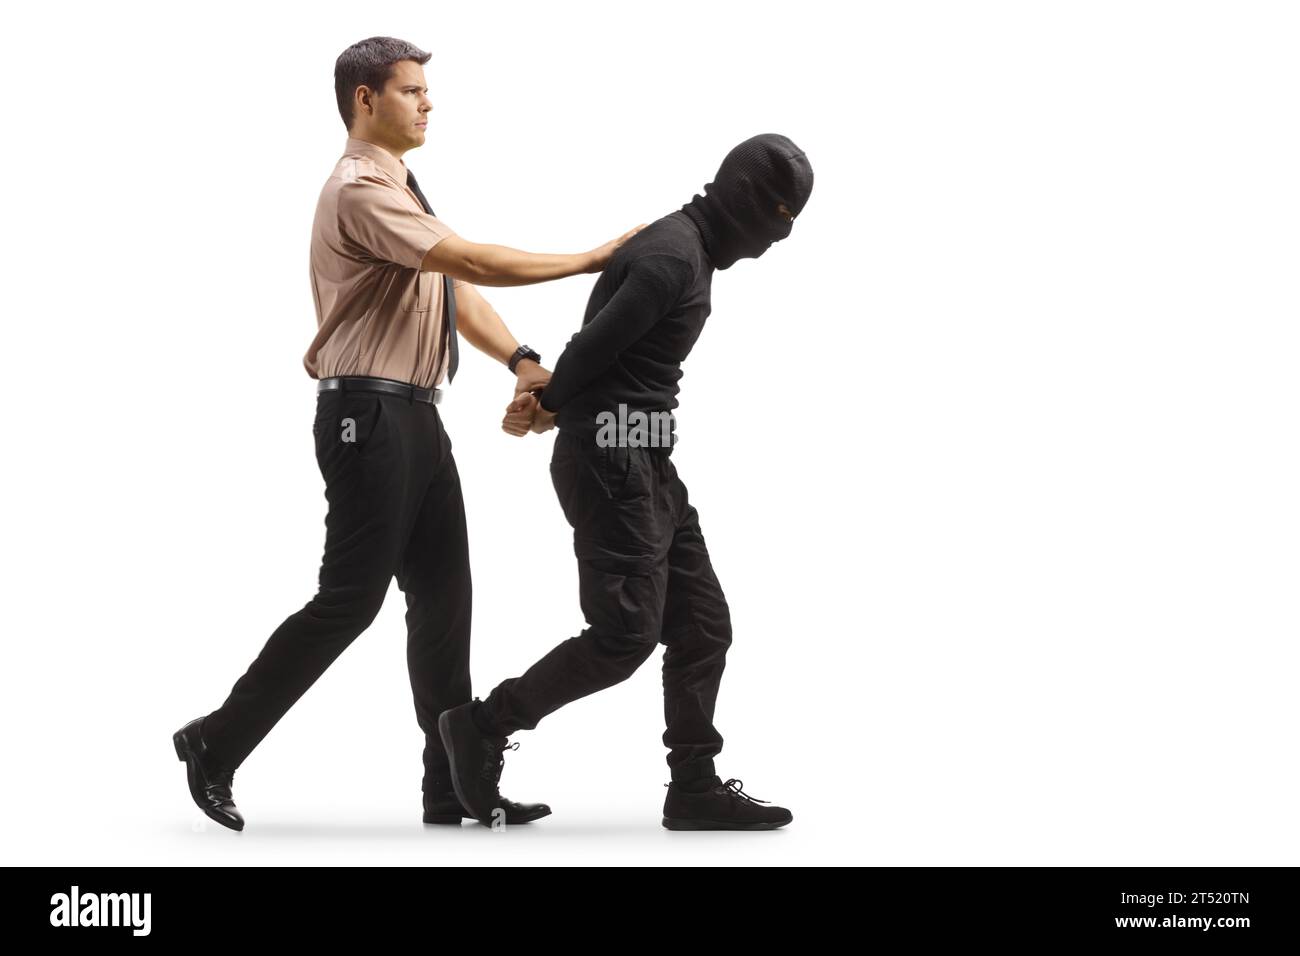 Garde de sécurité marchant avec le cambrioleur arrêté en vêtements noirs et Balaclava isolé sur fond blanc Banque D'Images